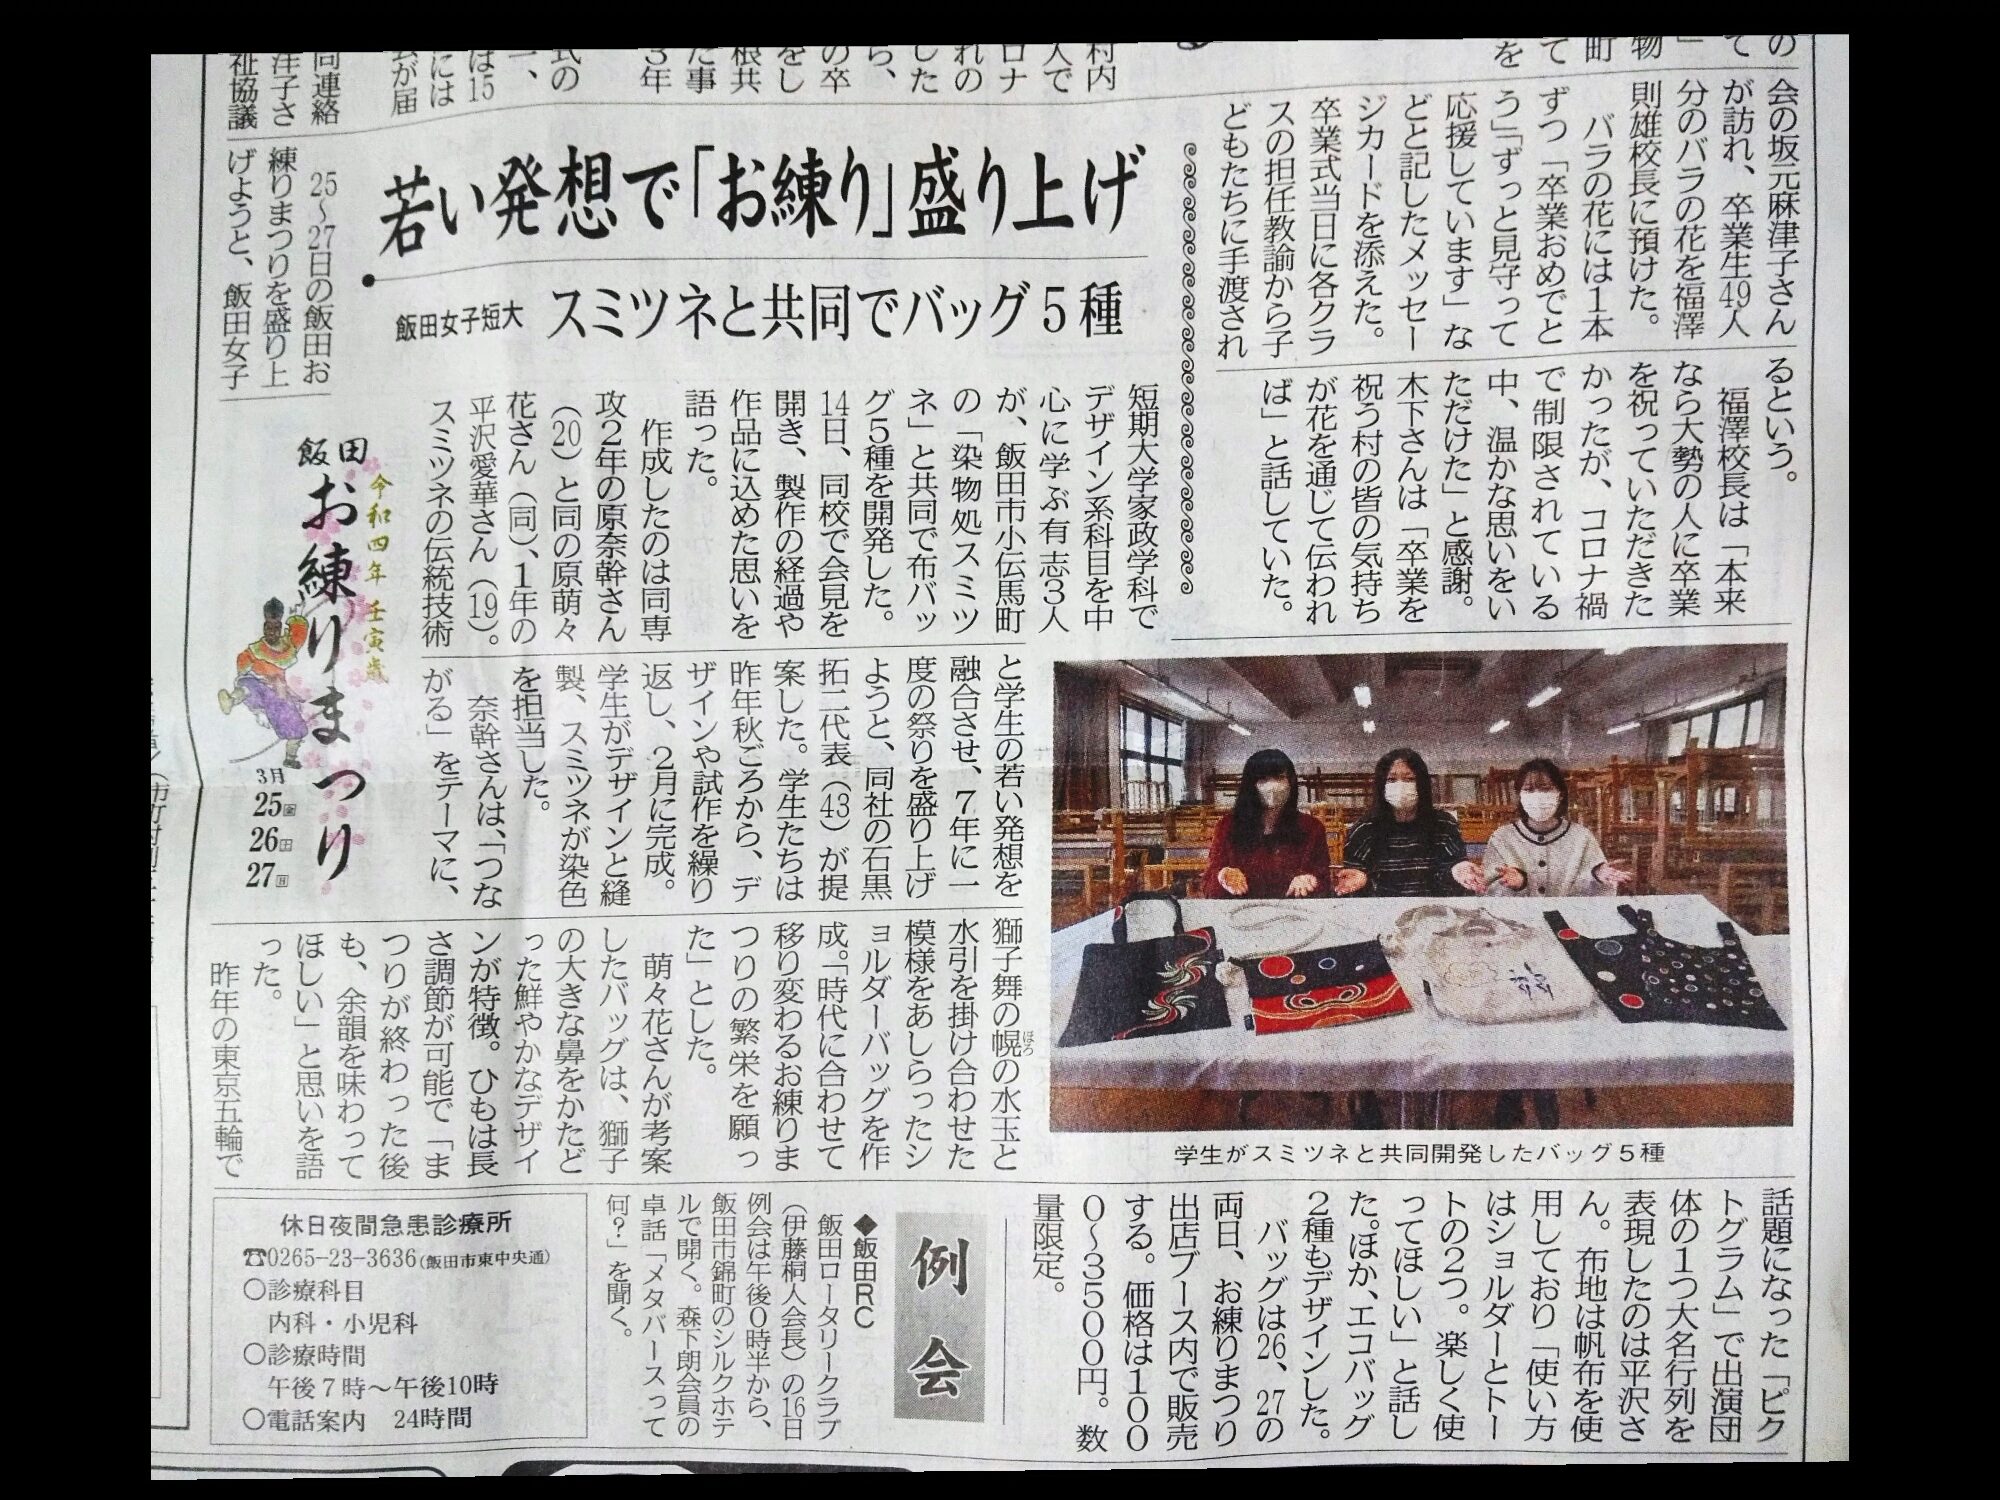 南信州様に「飯田女子短期大学さんとのコラボ企画」の記事が掲載をされました。